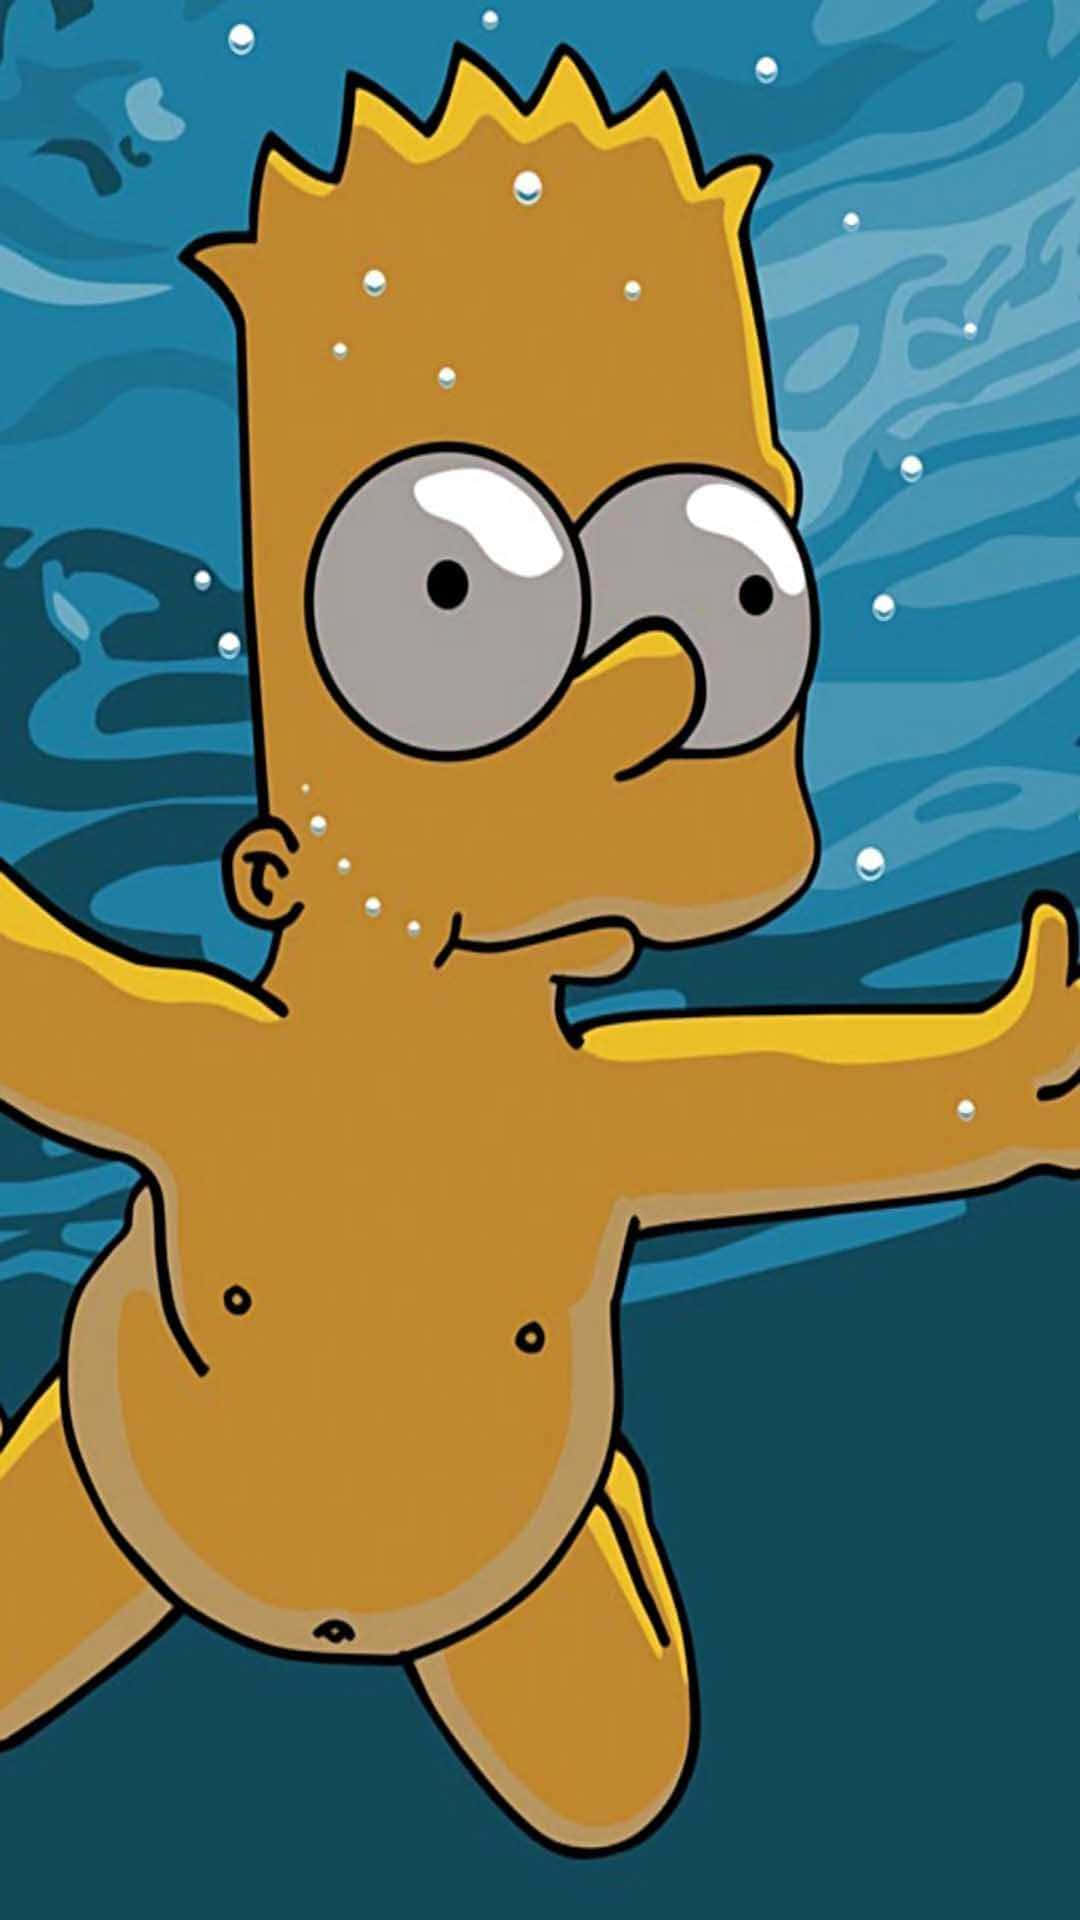 Immaginedel Personaggio Dei Cartoni Animati Di Bart